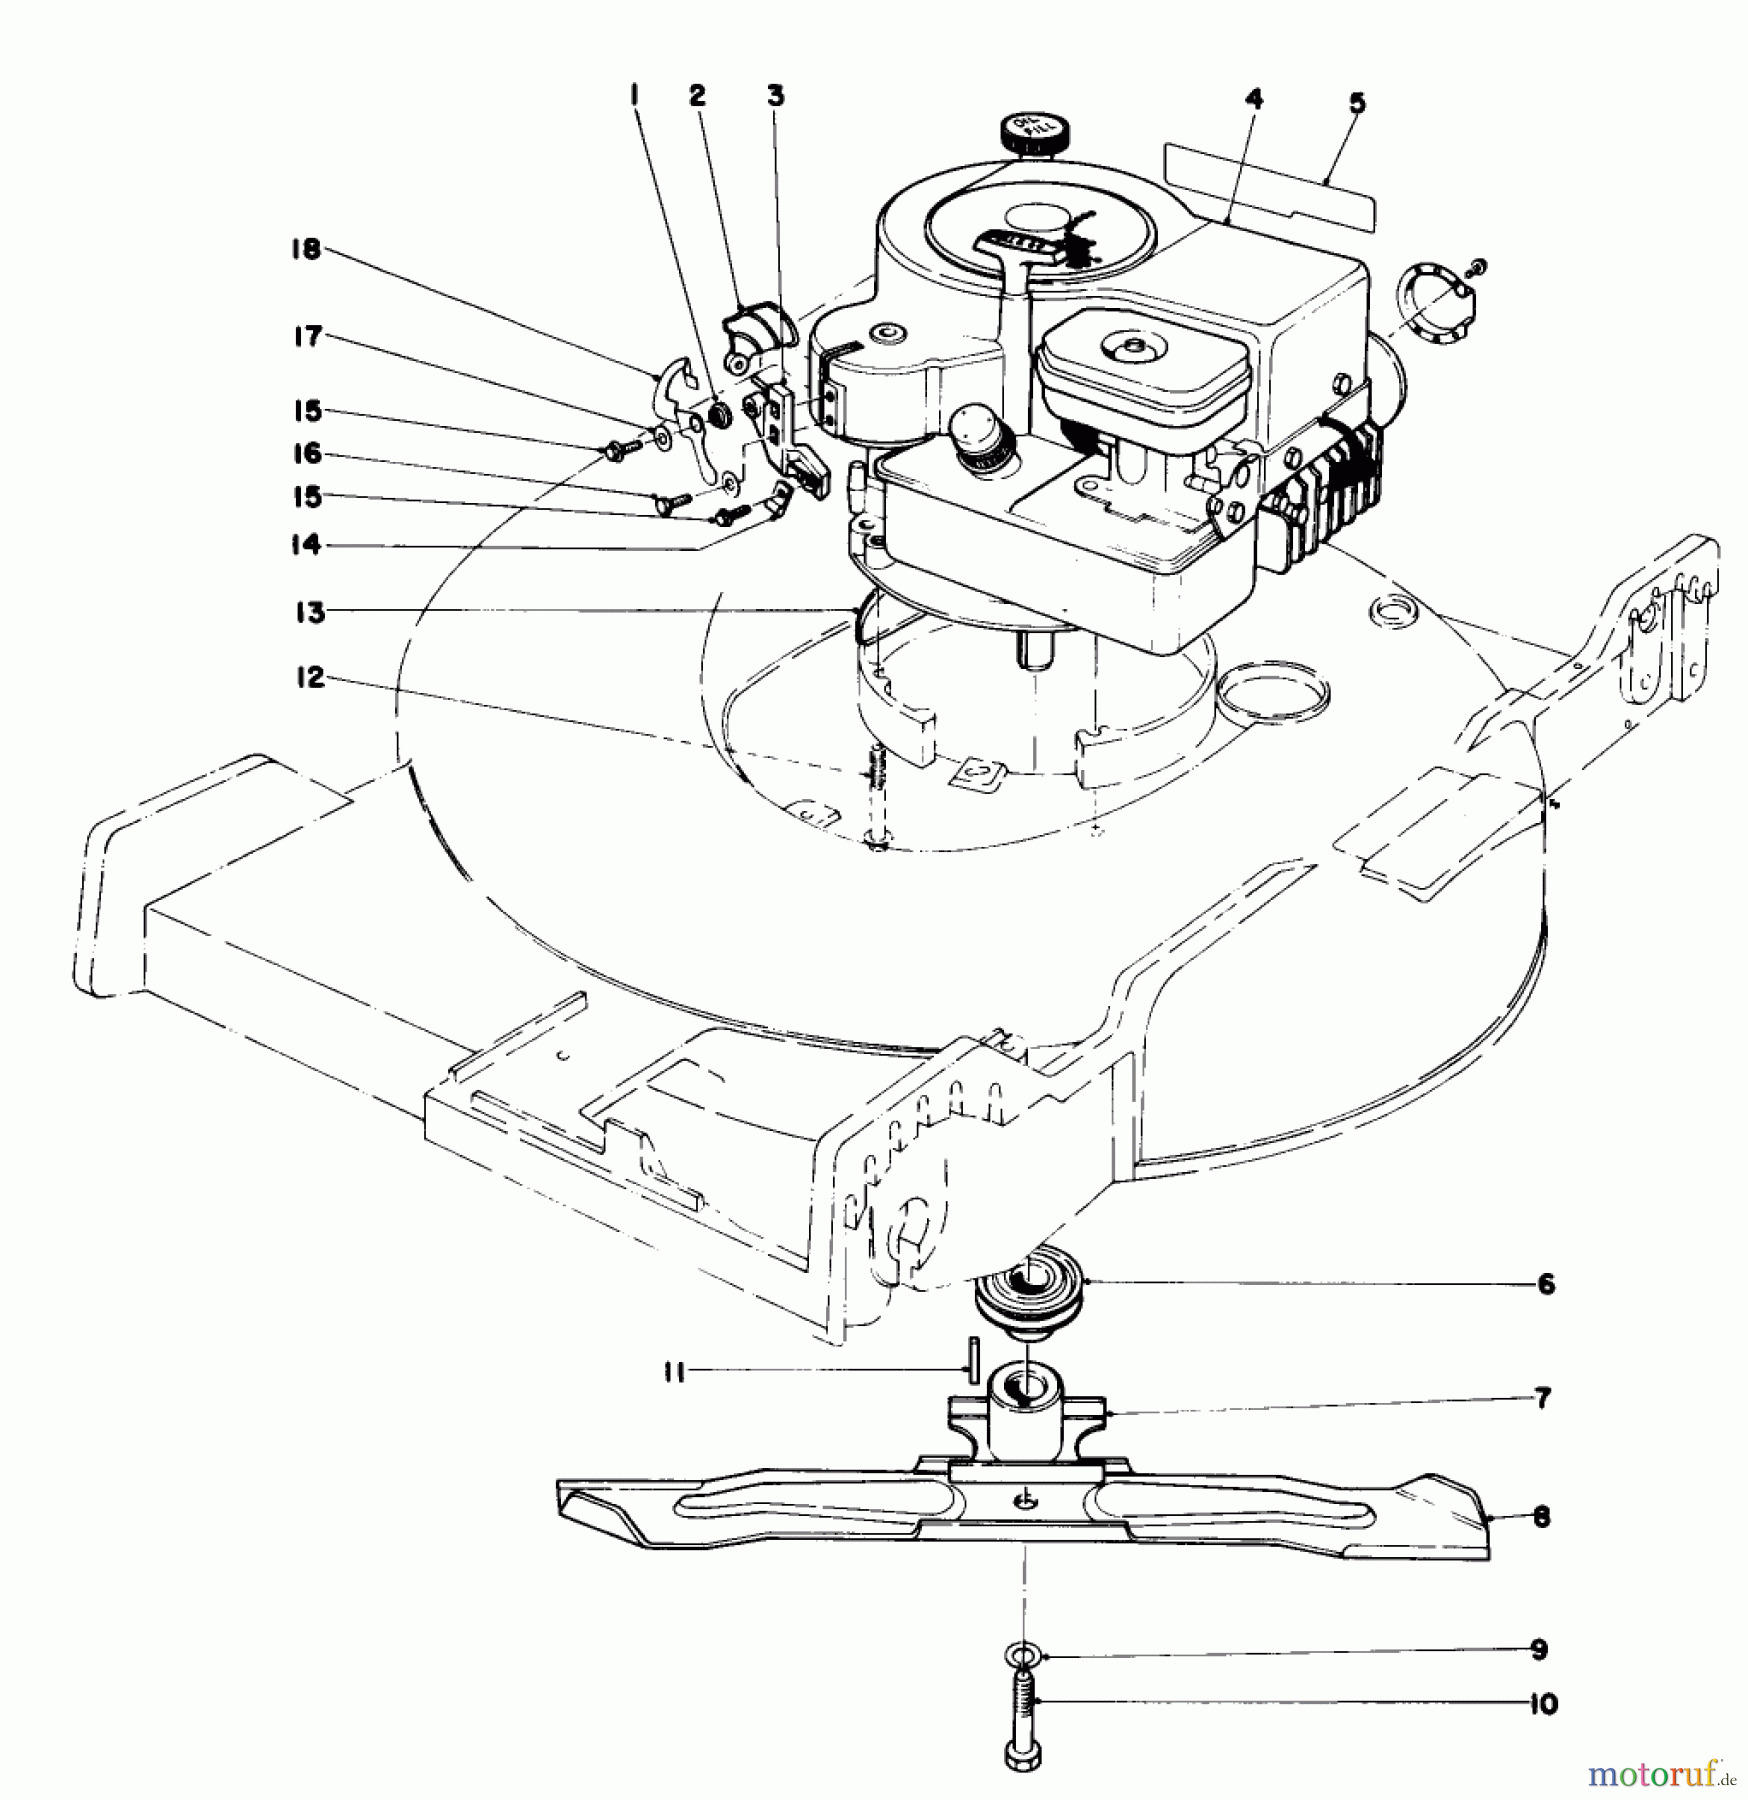  Toro Neu Mowers, Walk-Behind Seite 1 20765 - Toro Lawnmower, 1980 (0000001-0999999) ENGINE ASSEMBLY